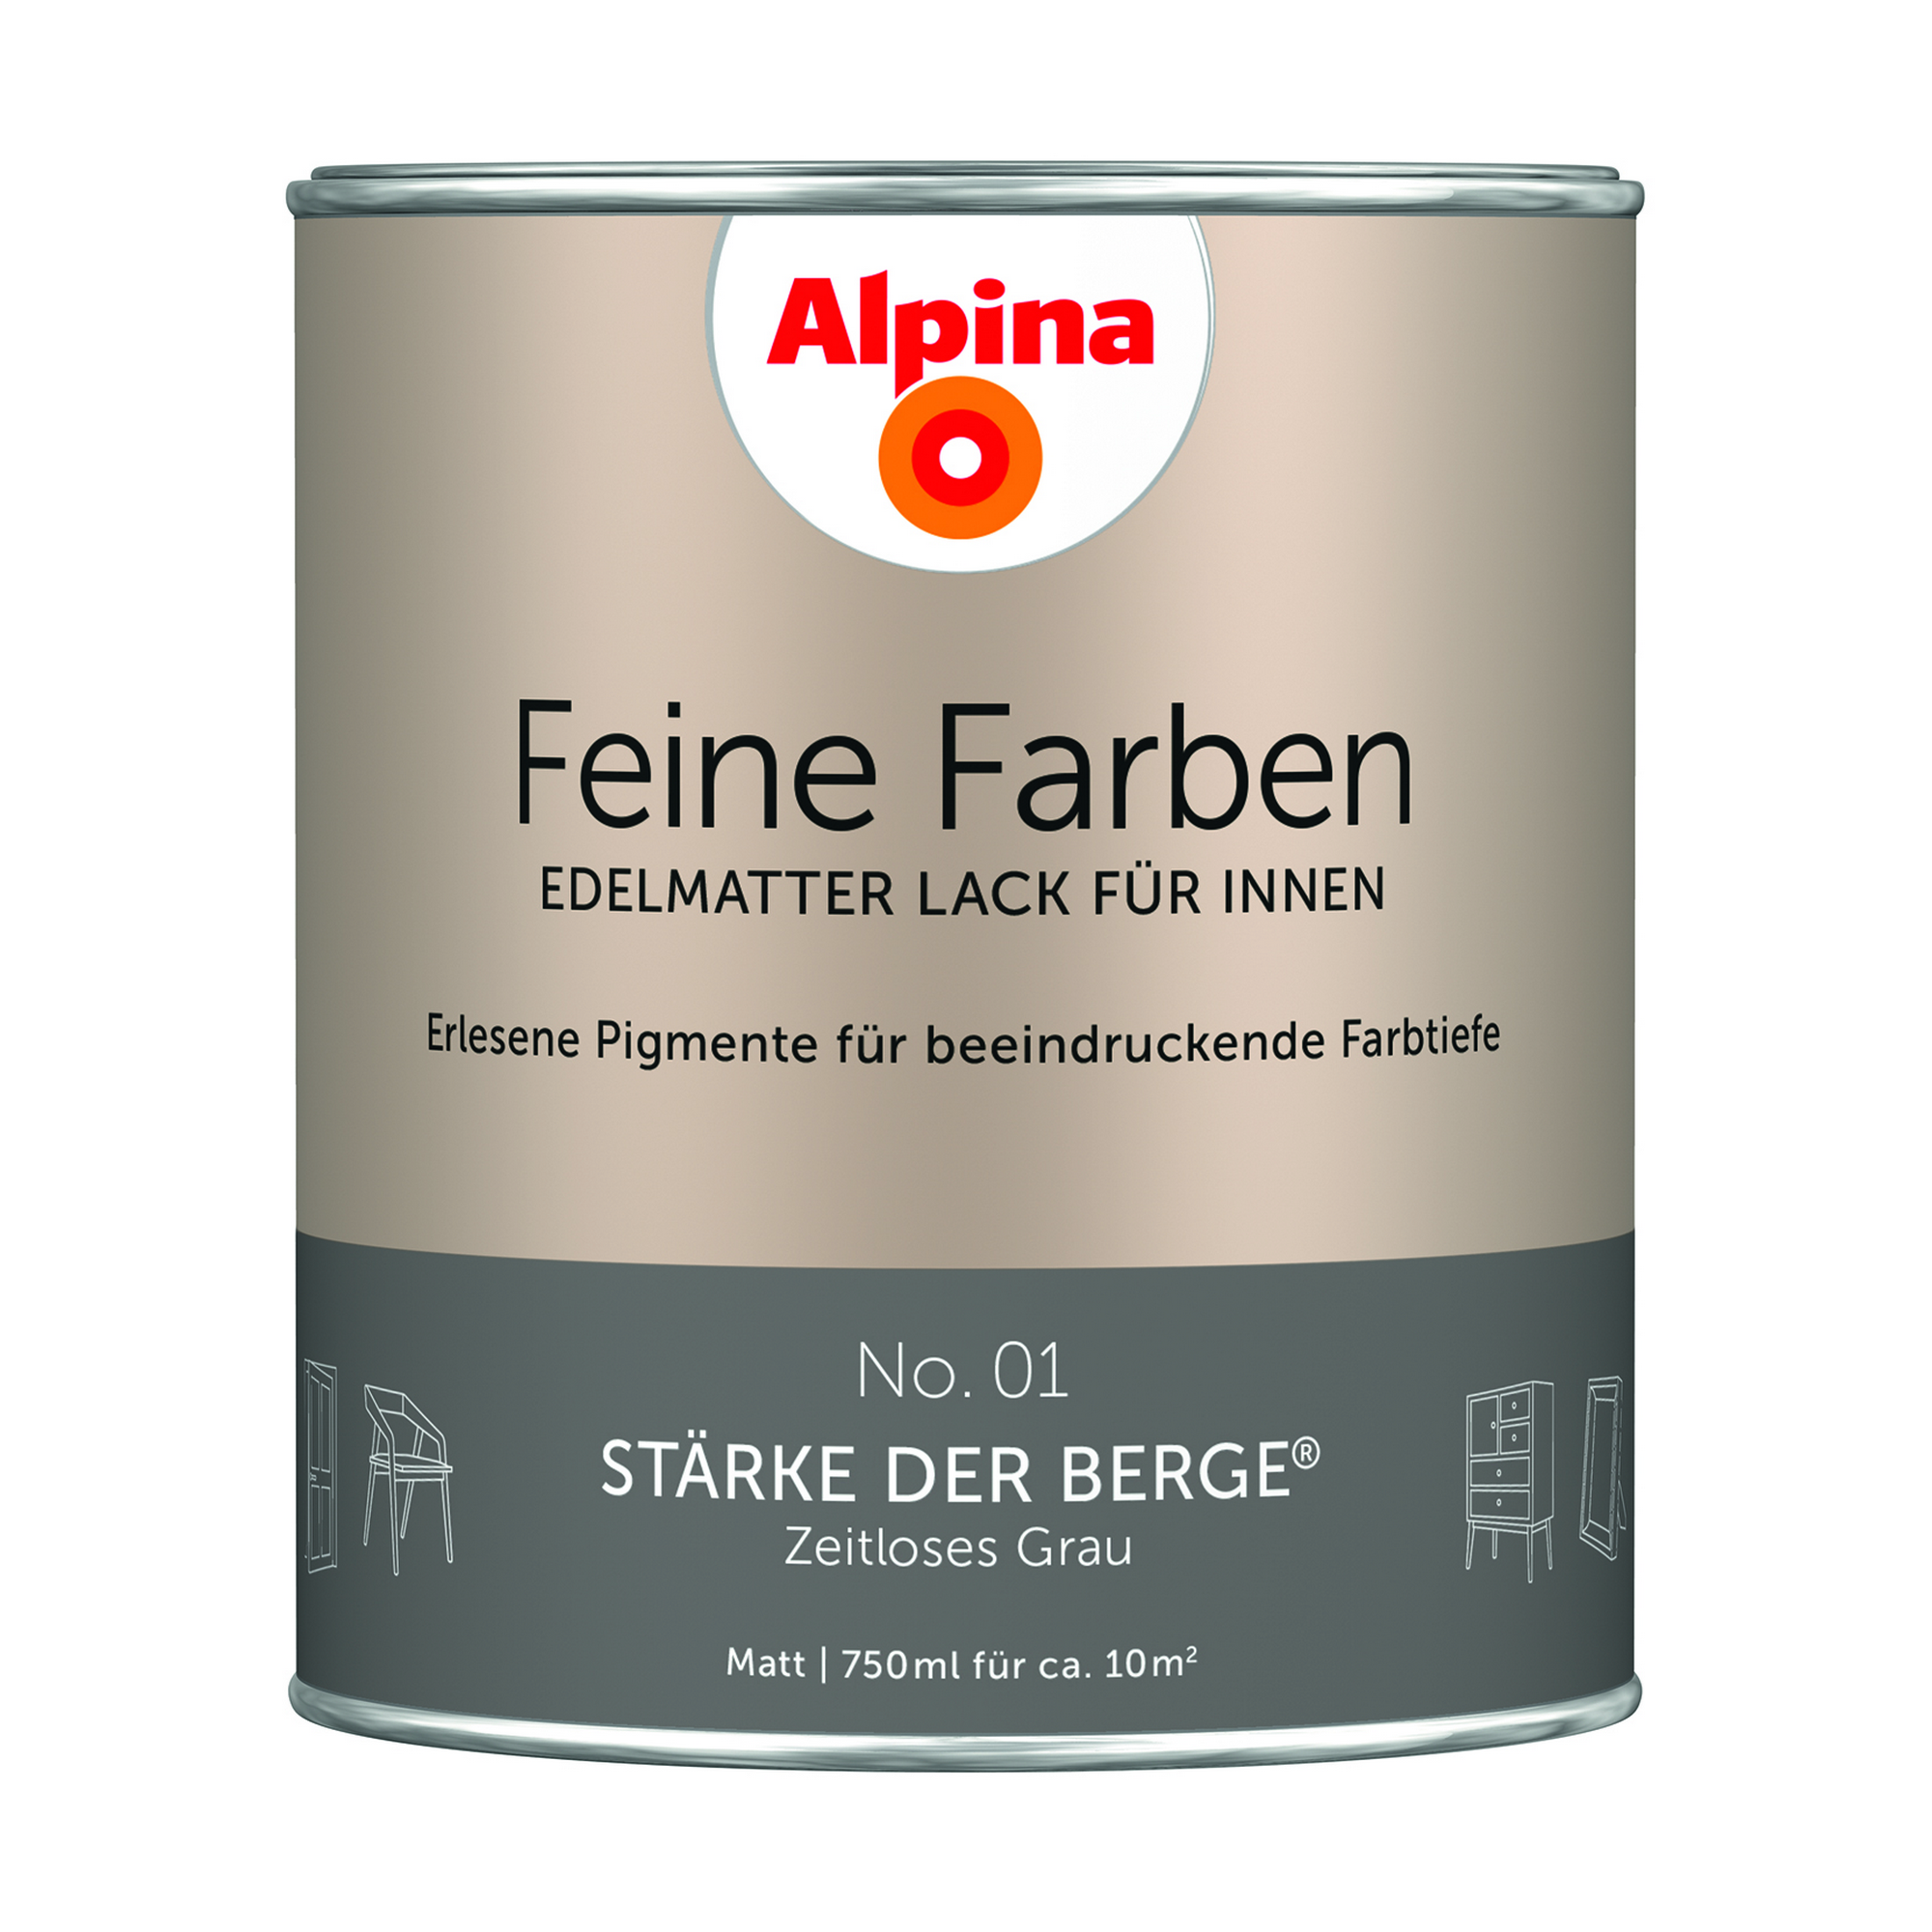 Feine Farben 'Stärke der Berge' grau matt 750 ml + product picture